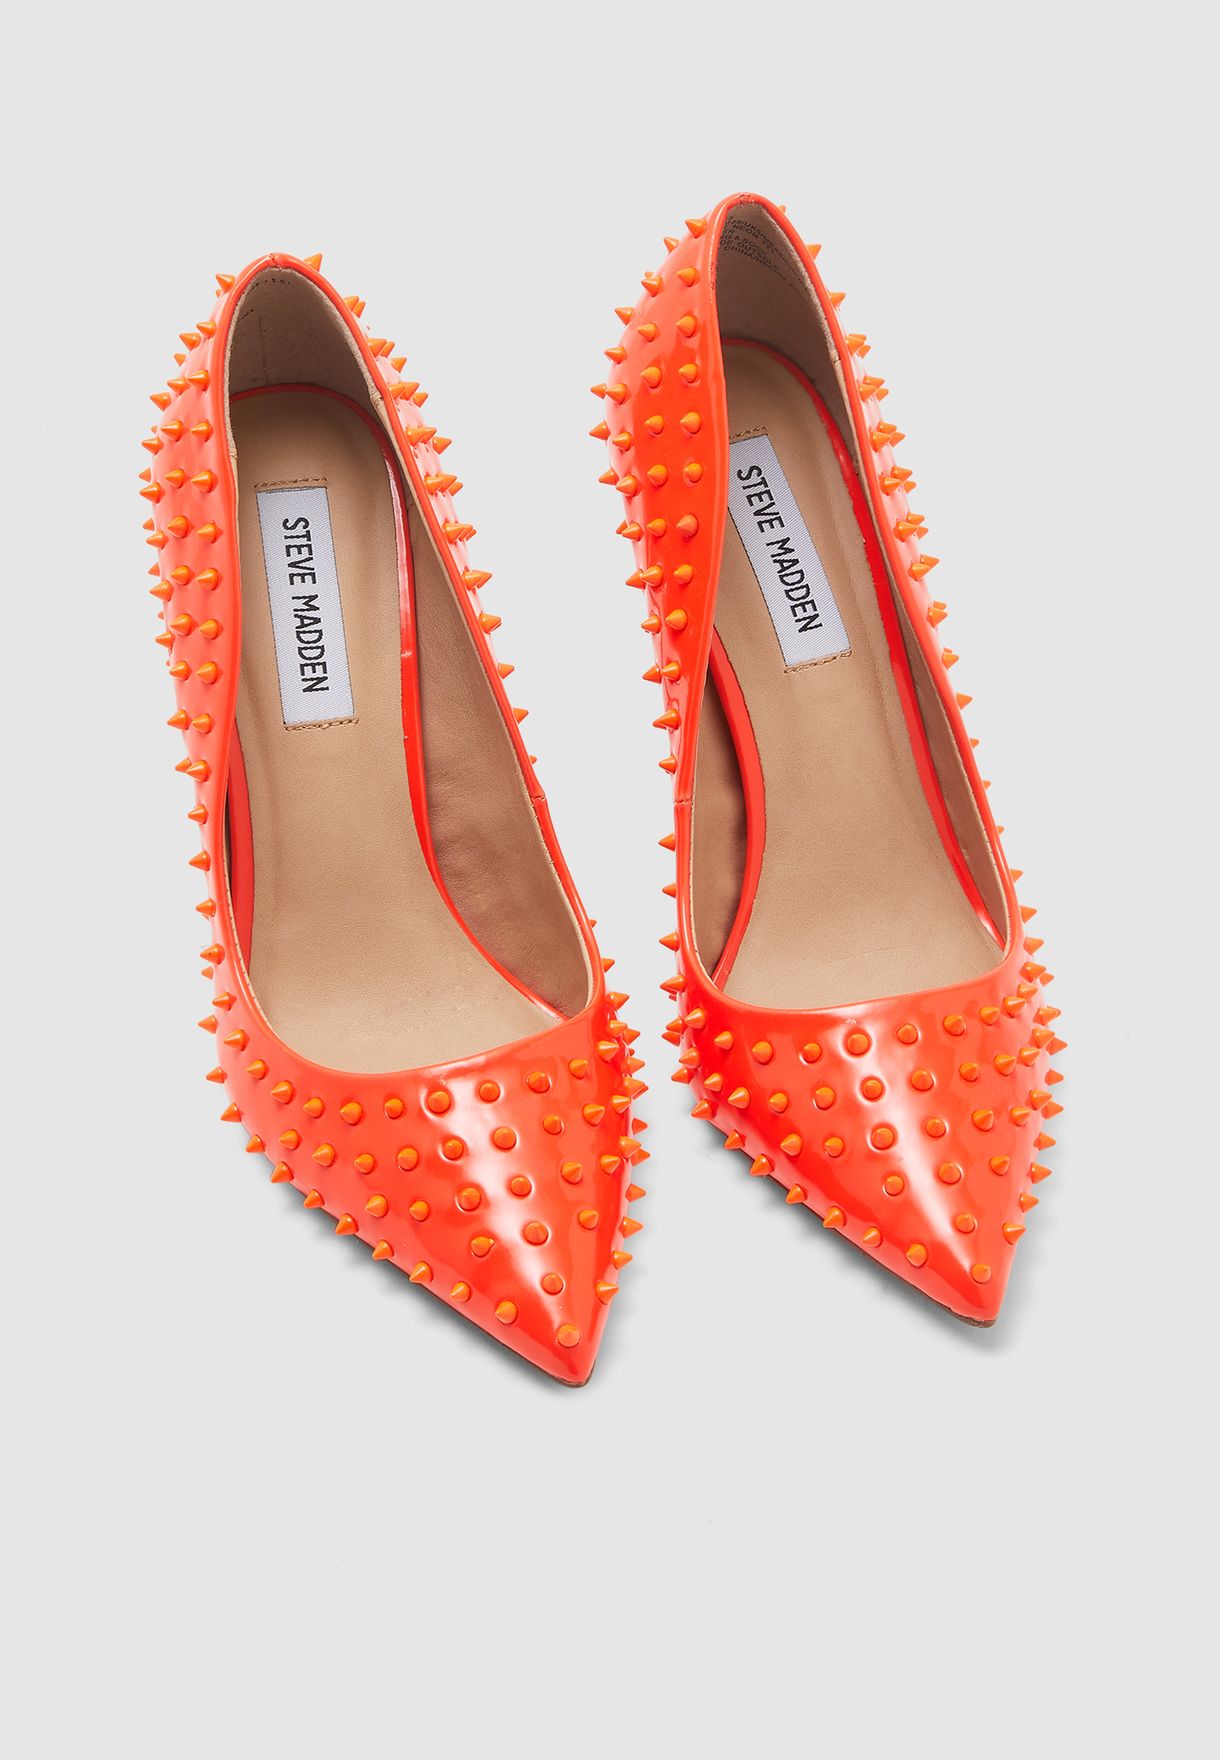 orange steve madden heels